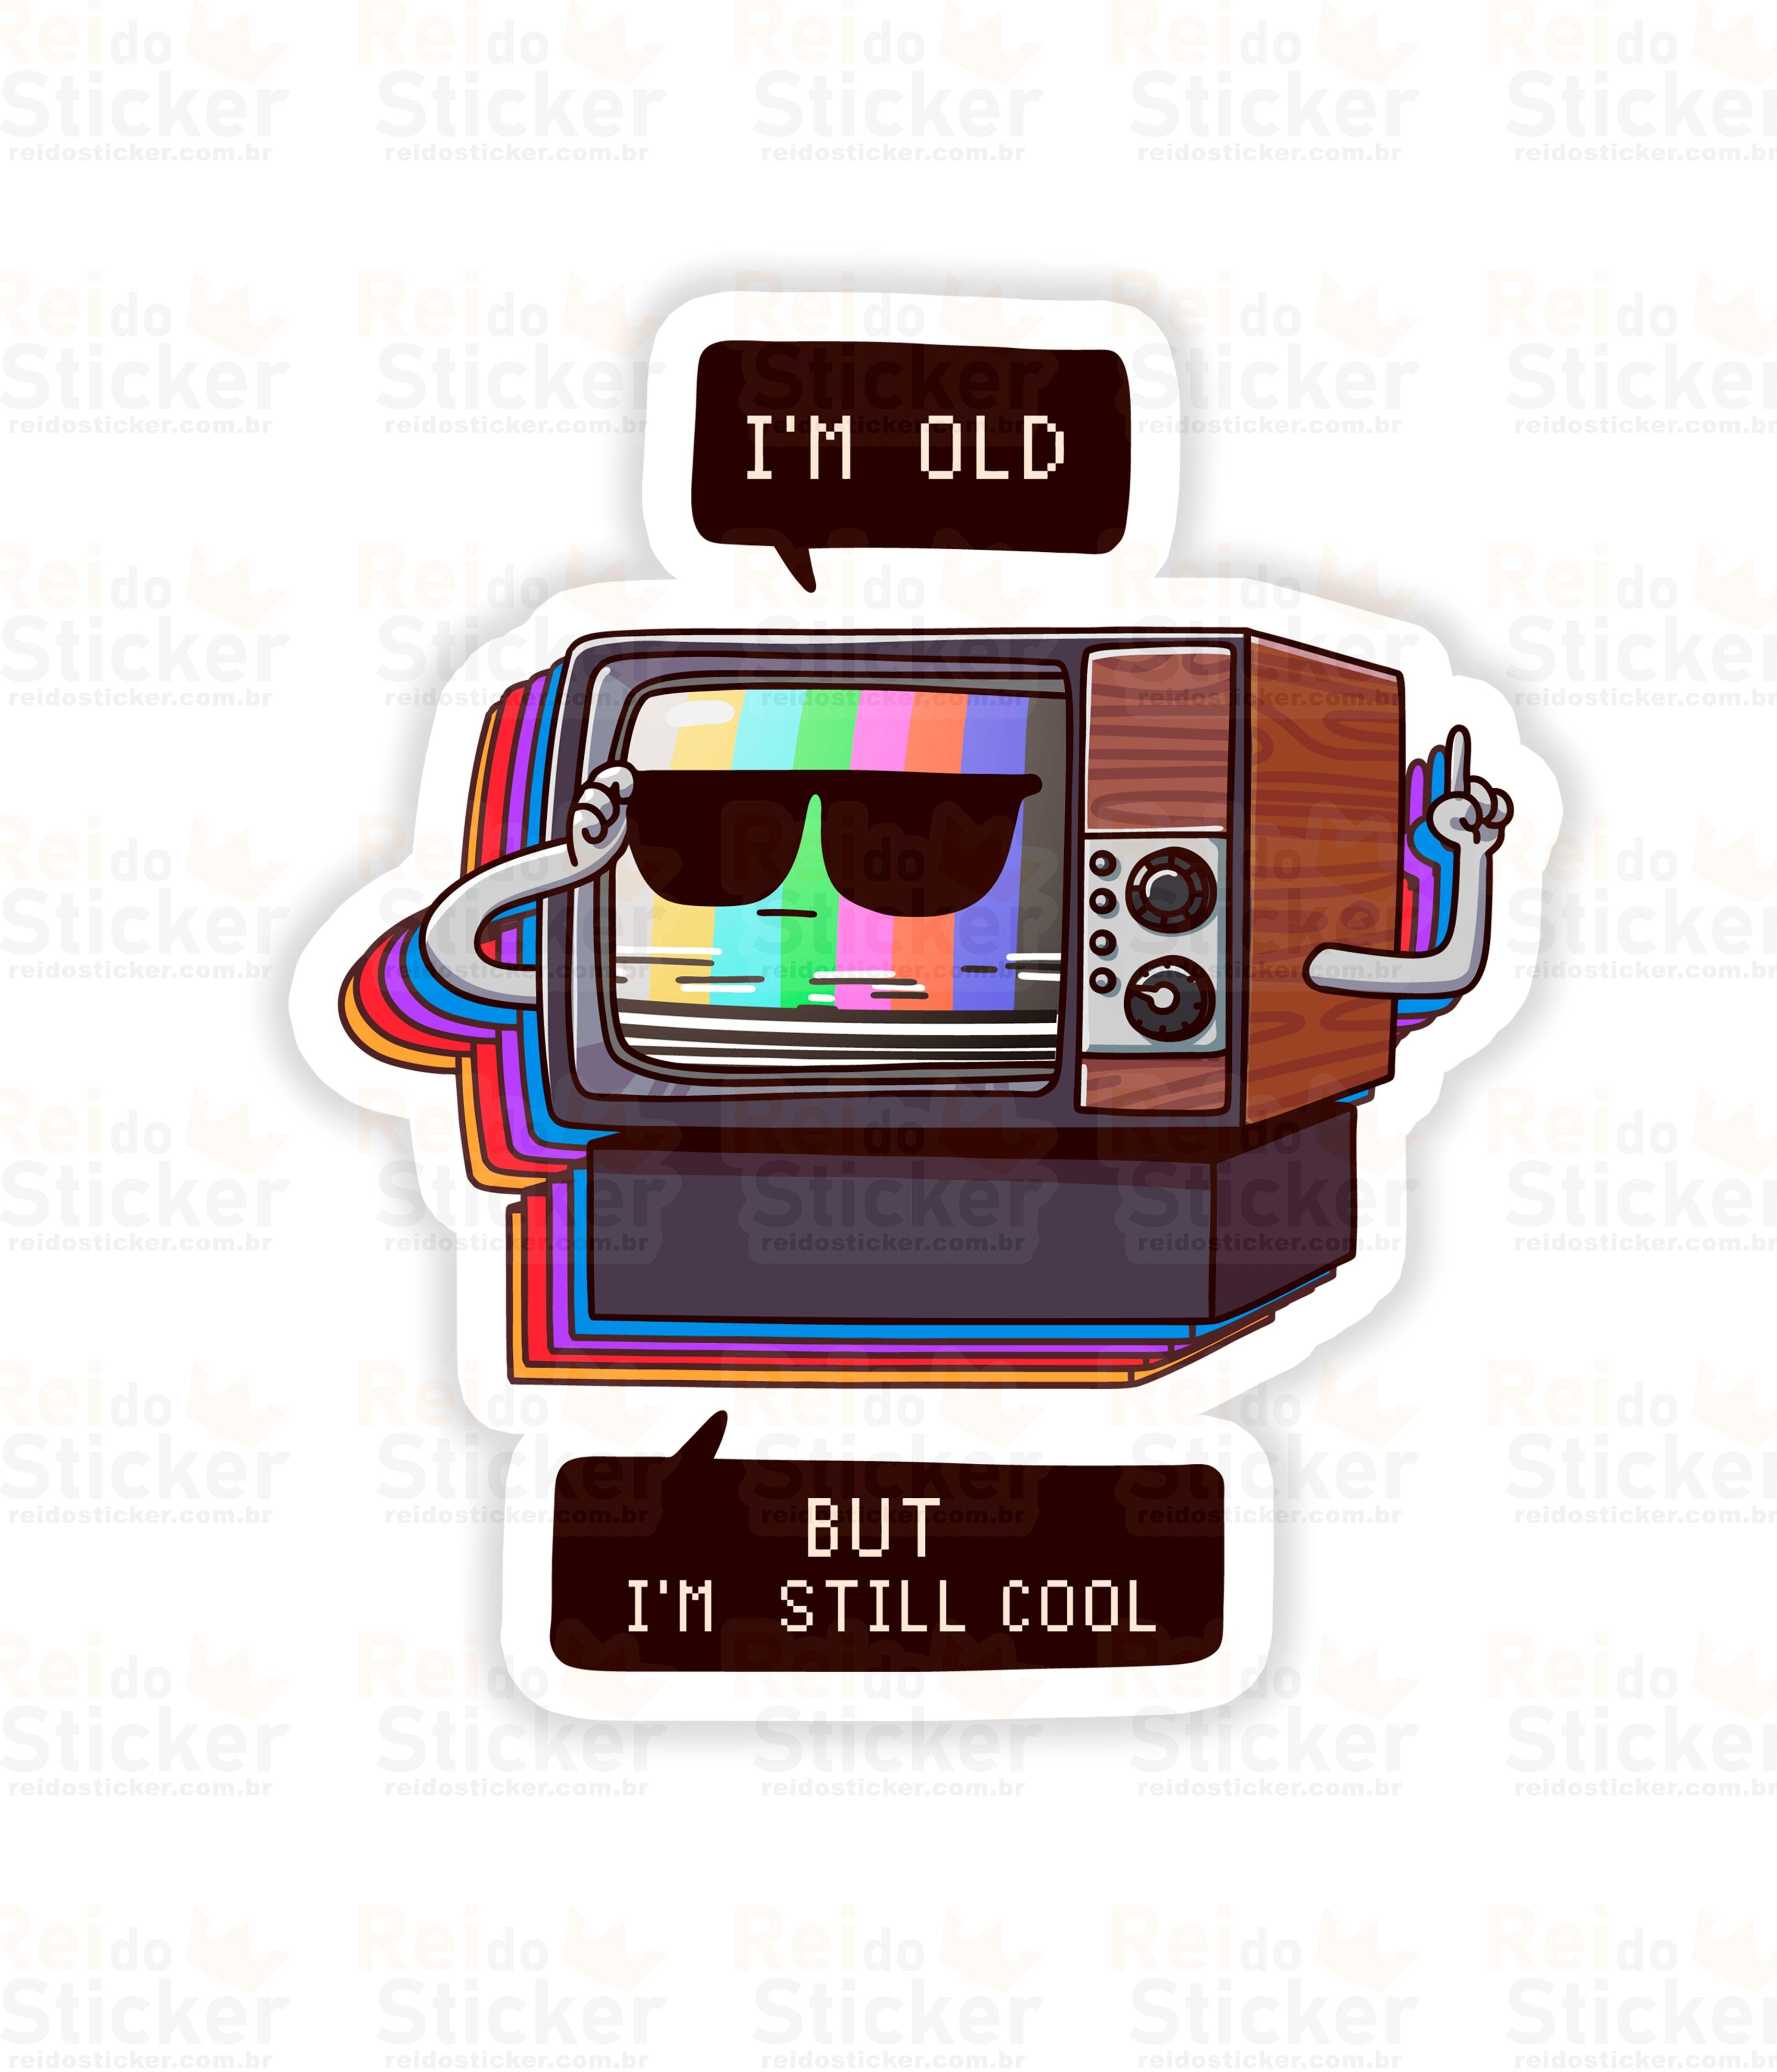 Still Cool - Rei do Sticker